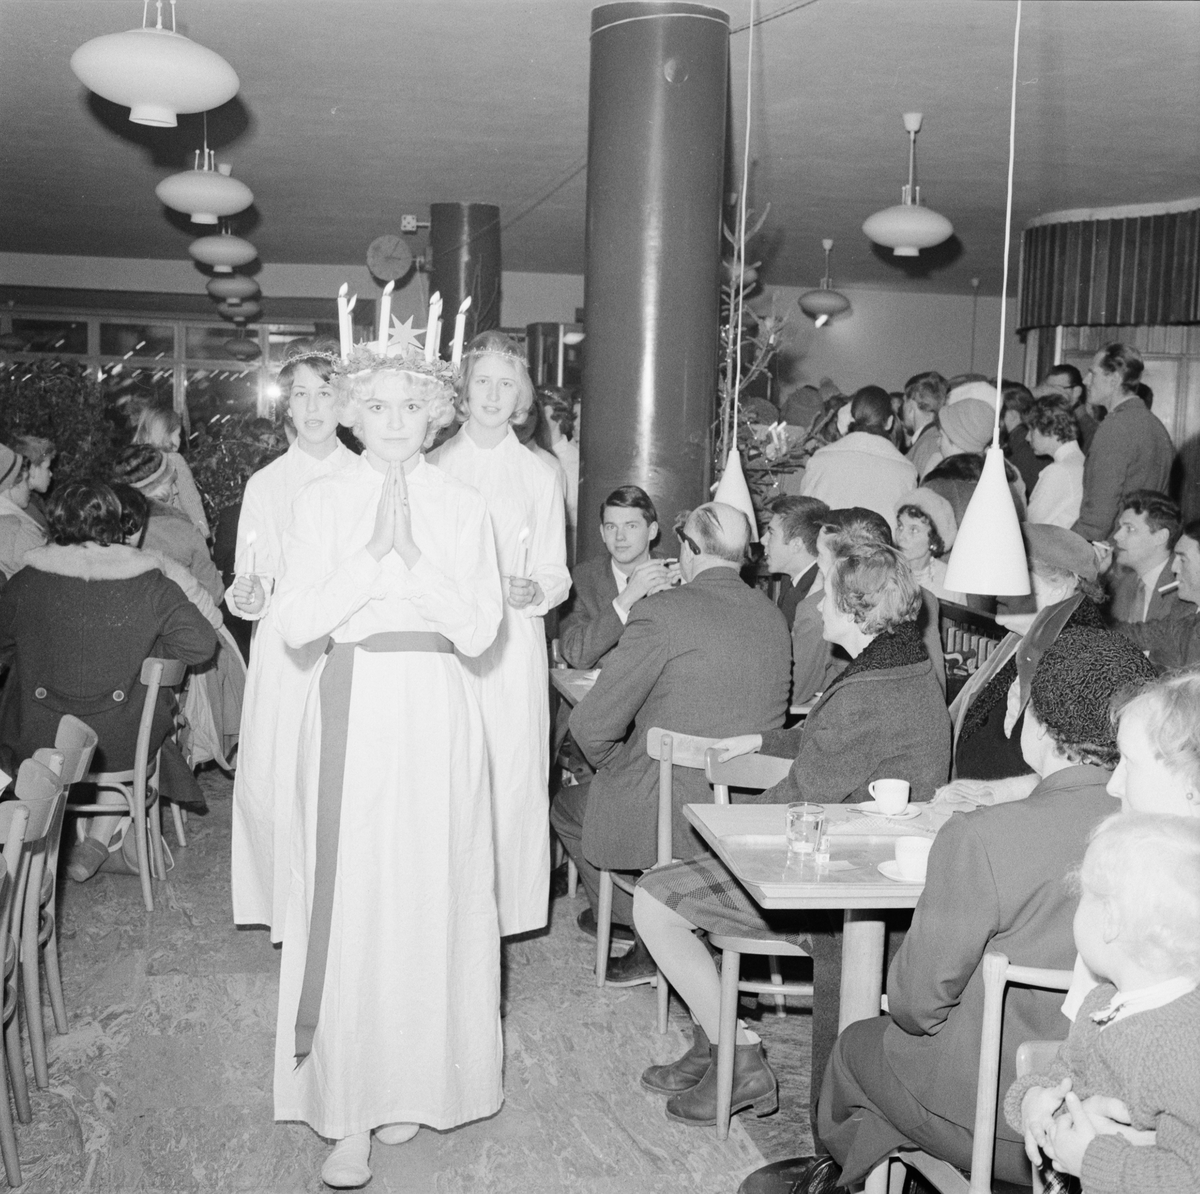 "Forums lucia frk. Anita Åsberg gladde gästerna i den fullsatta restaurangen", Uppsala 1959